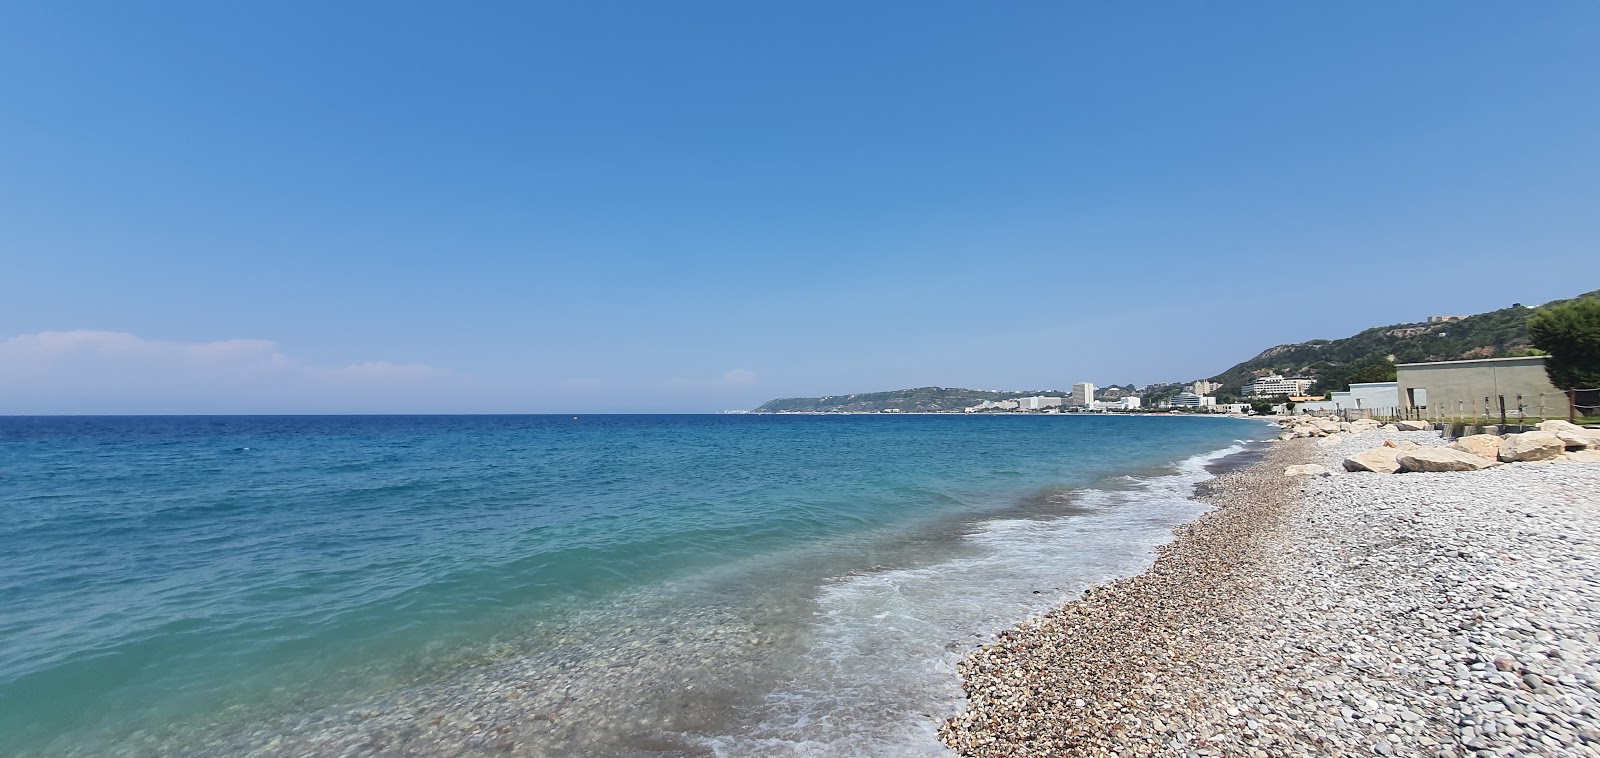 Foto de Ialysos beach II com areia clara e seixos superfície